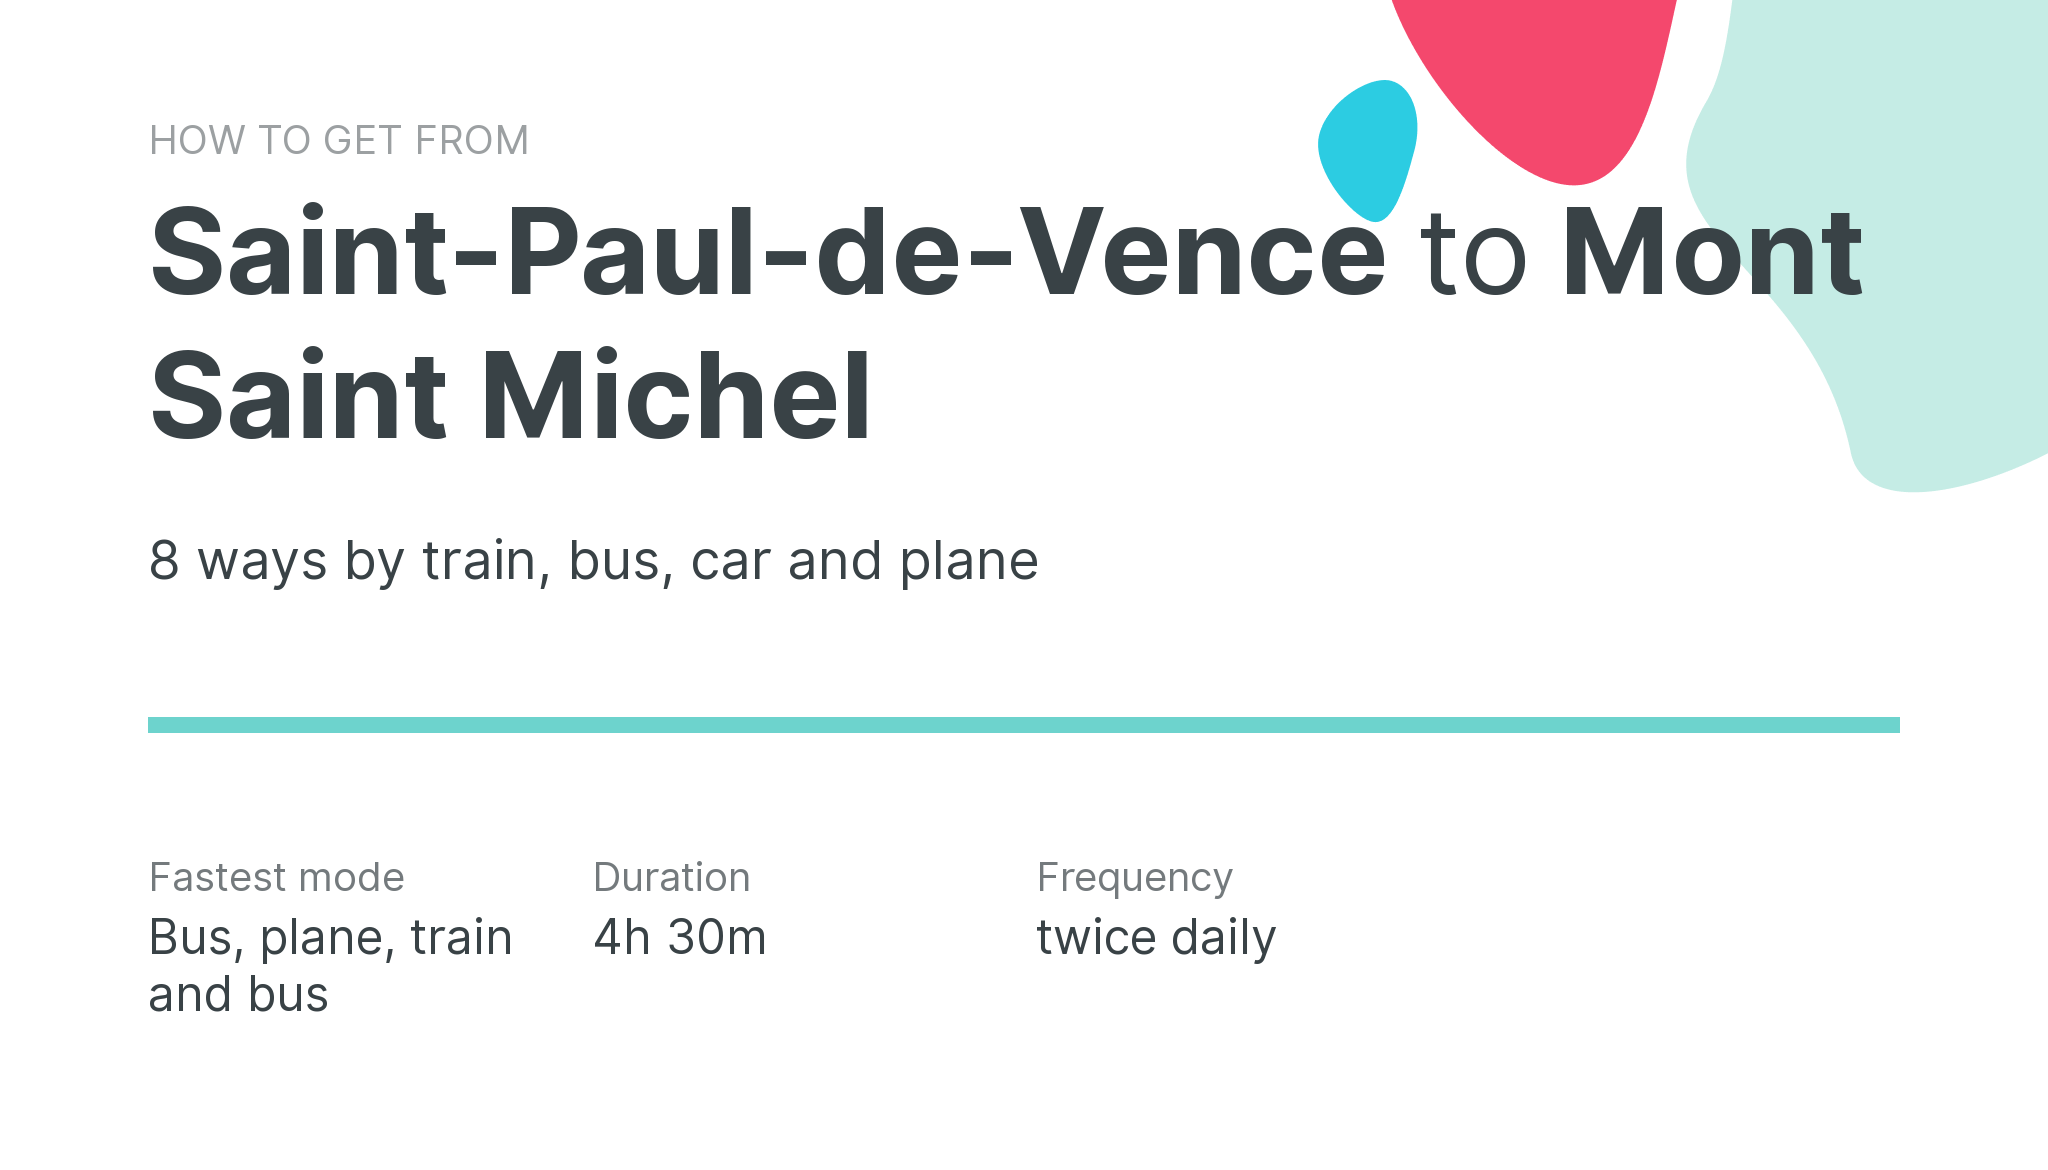 How do I get from Saint-Paul-de-Vence to Mont Saint Michel